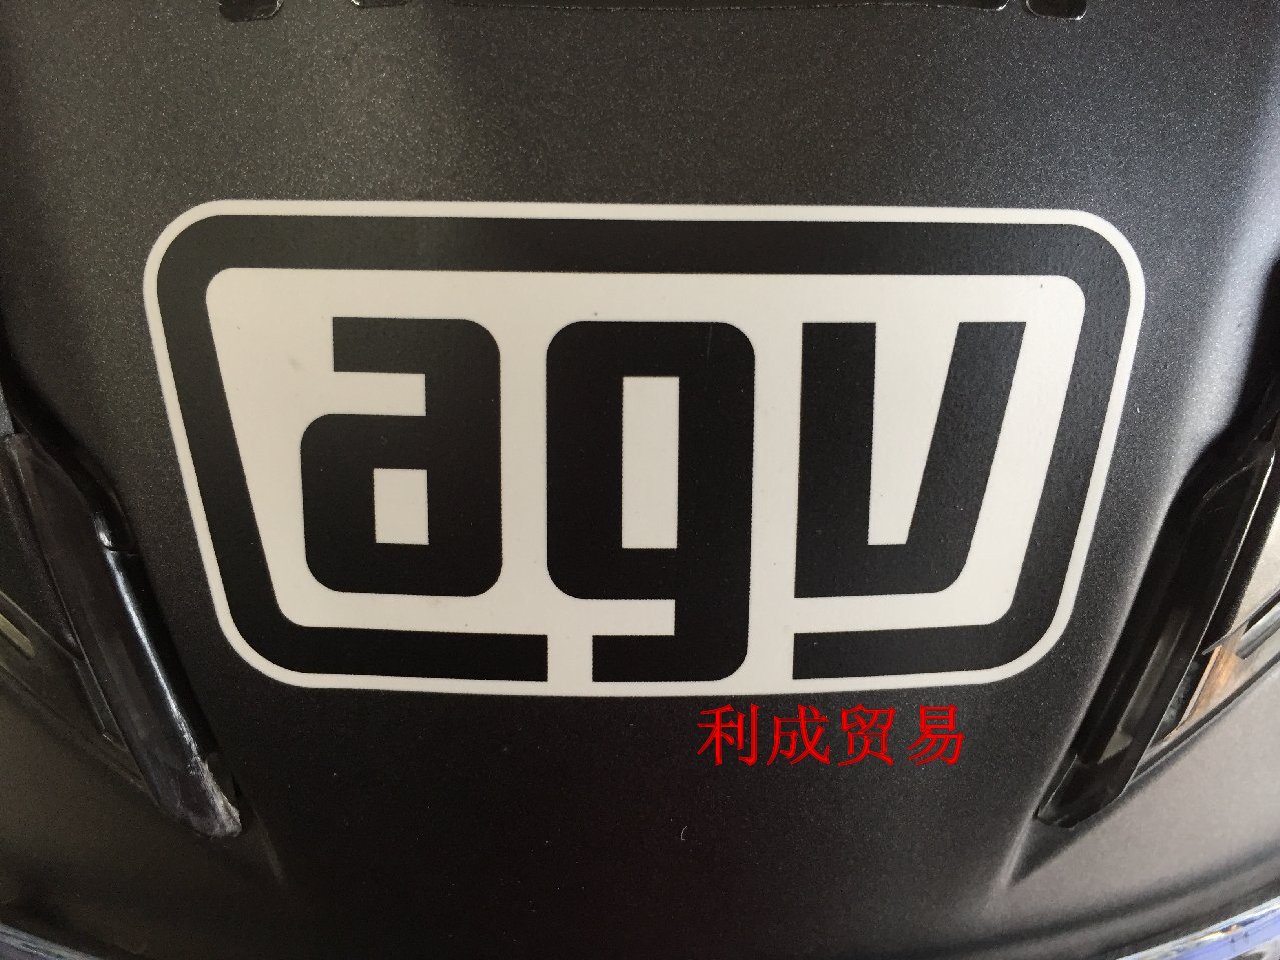 AGVHelmet标志贴纸/品牌头盔贴花/摩托车贴花/可遮刮痕划痕/车贴